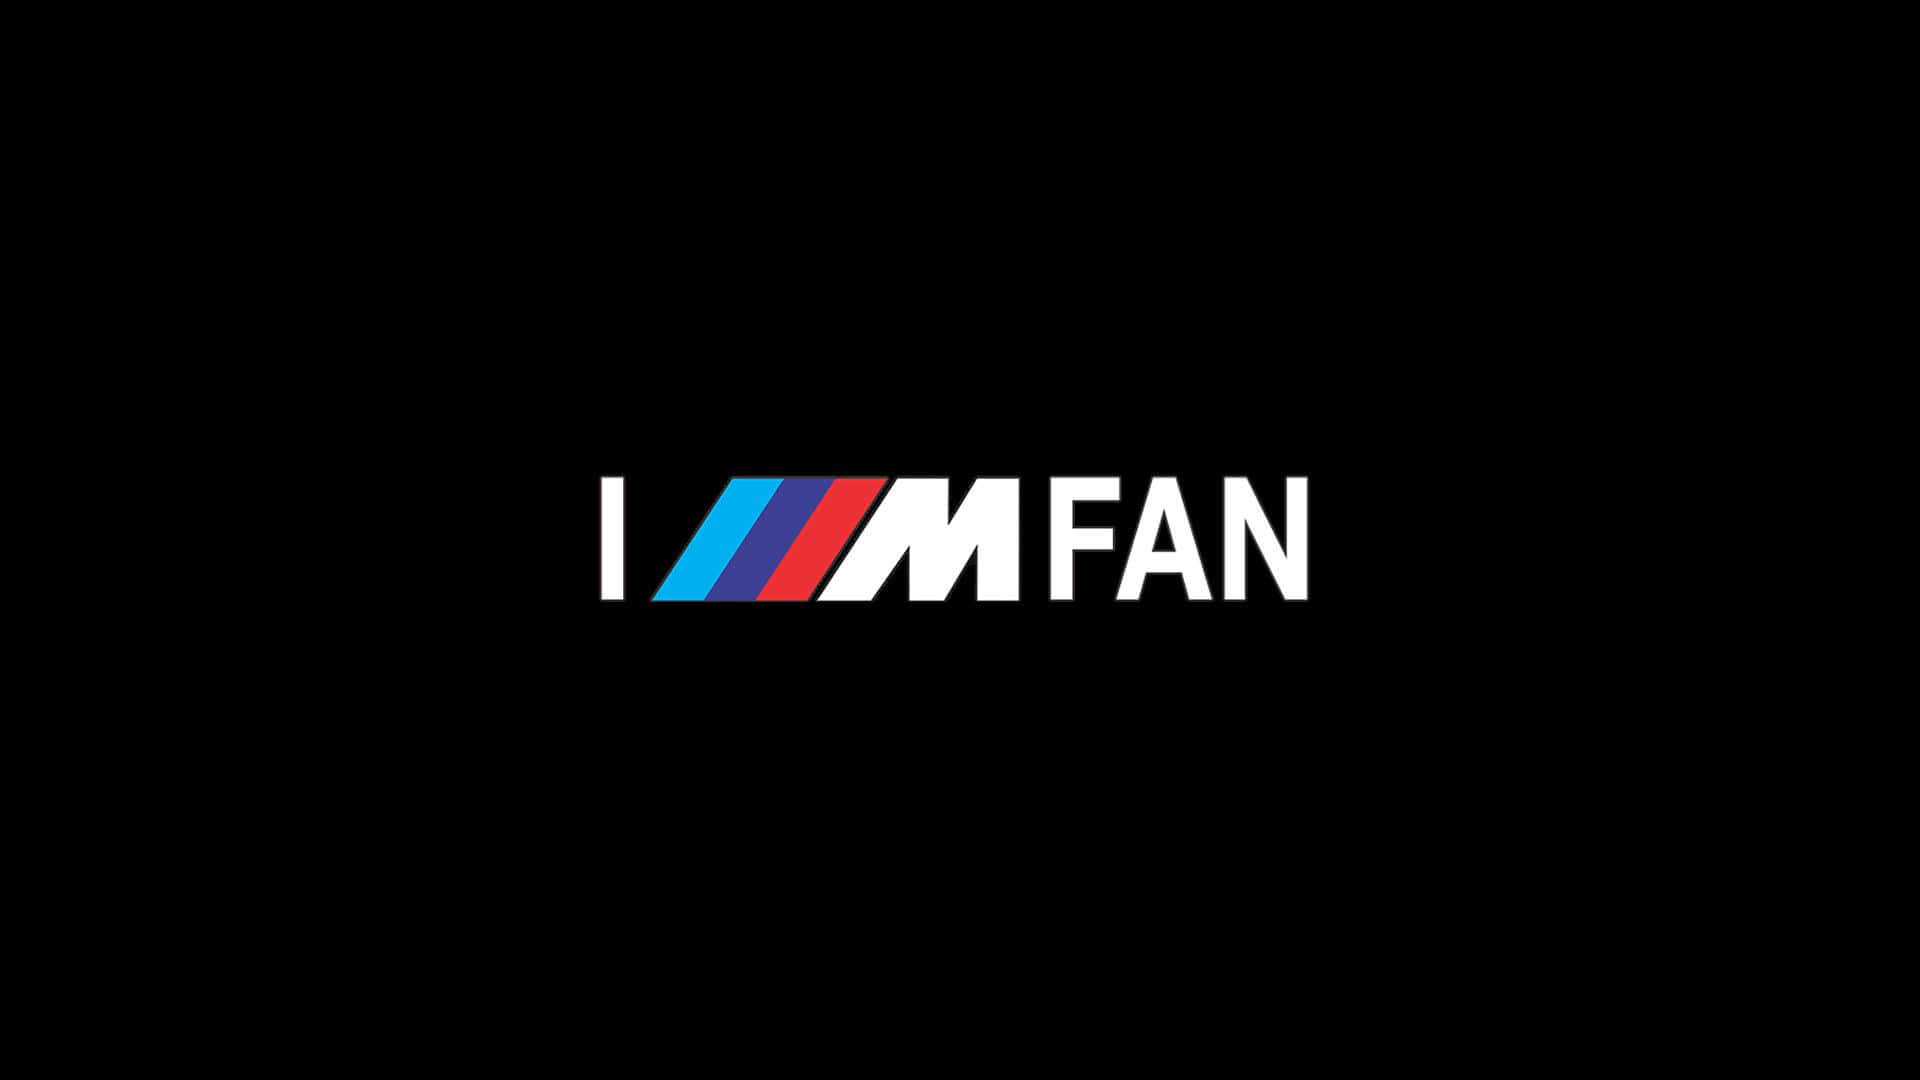 Fondode Pantalla De La Serie M Con Resolución De 720p | Logotipo De Fan De La Serie M